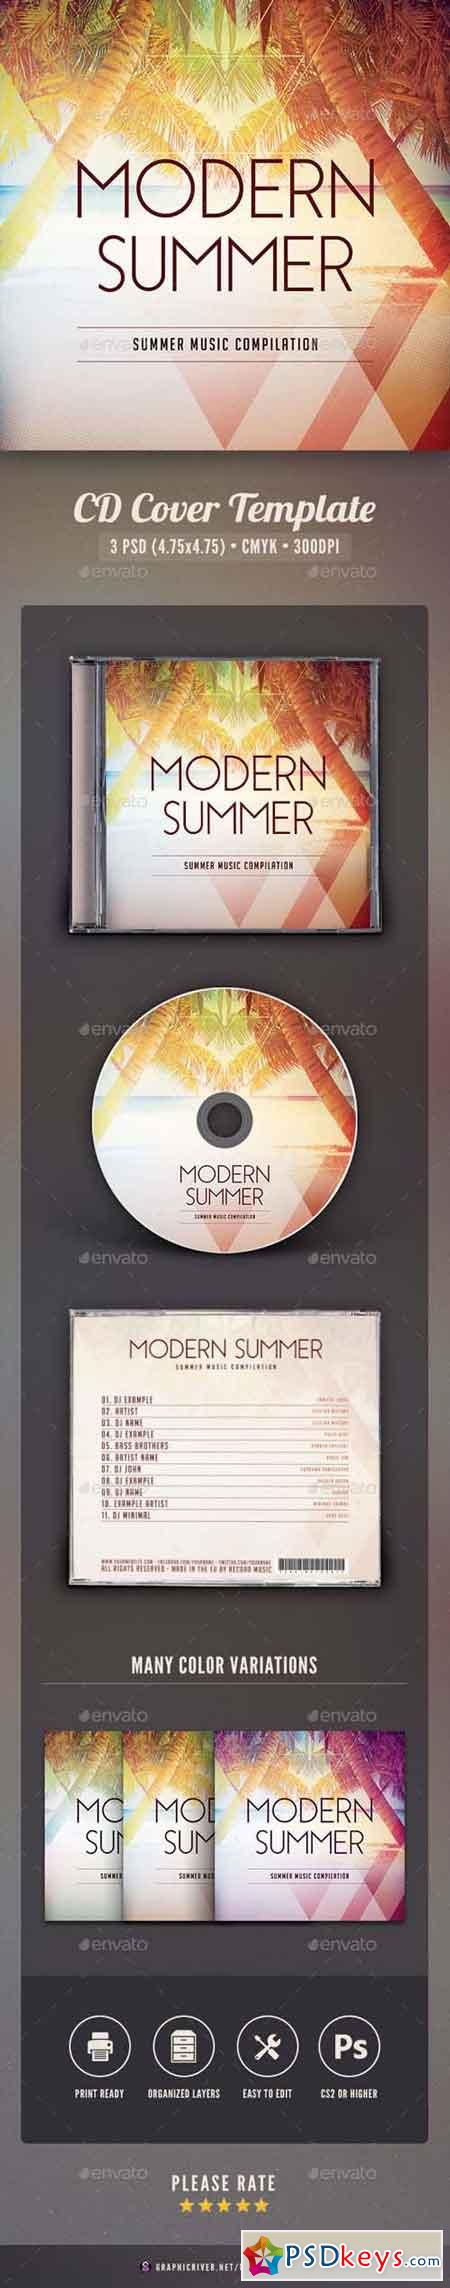 Modern Summer CD Cover Artwork 16455379